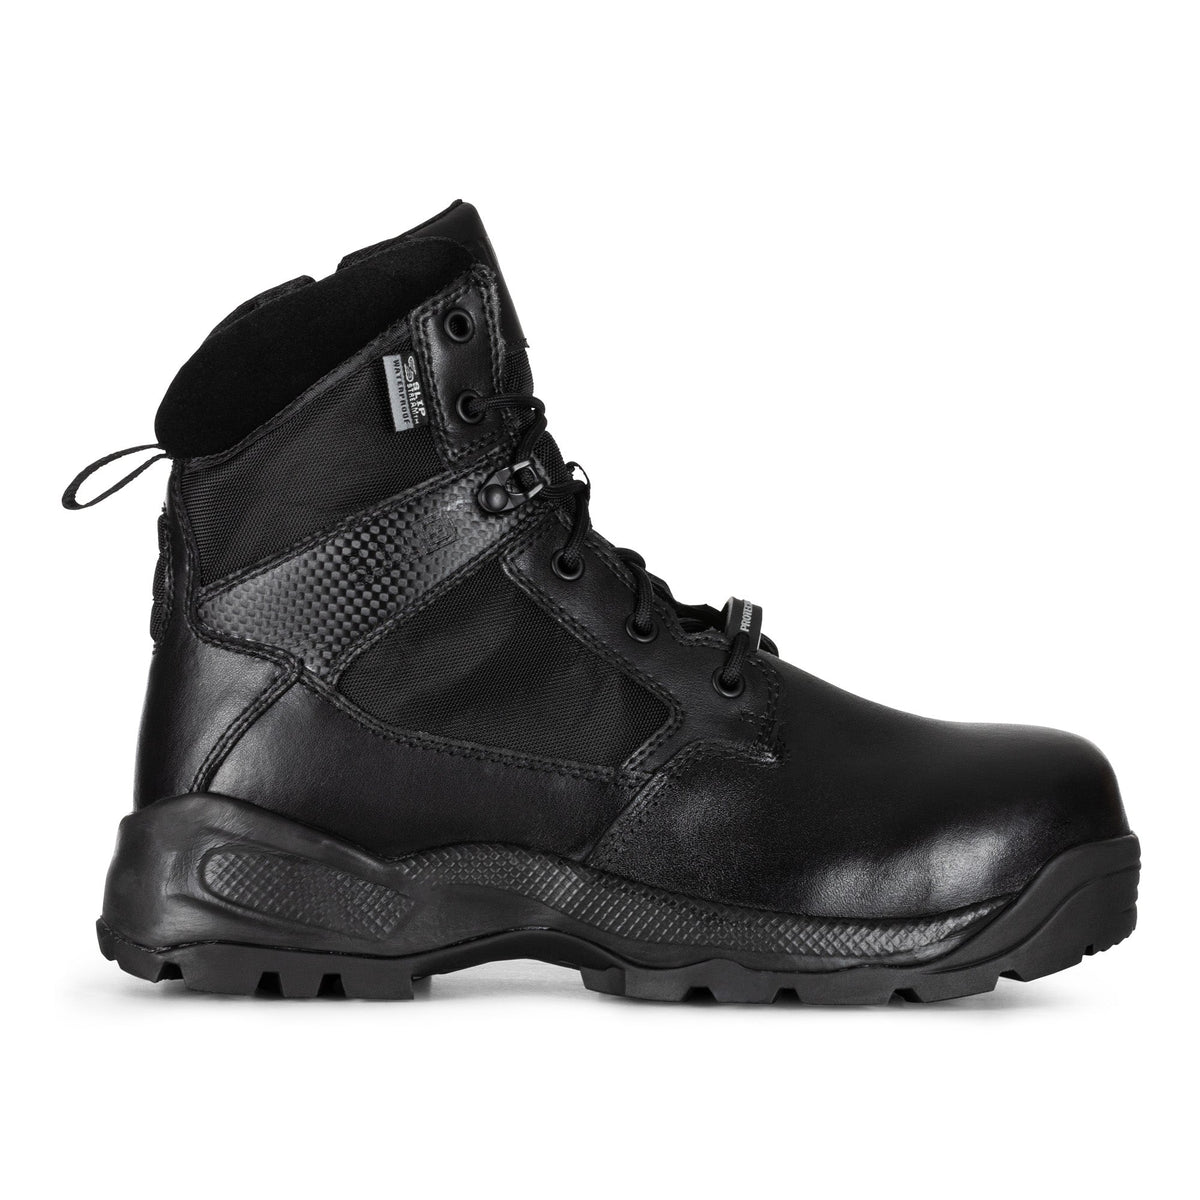 5.11 Tactical A.T.A.C. 2.0 6 Inches Shield Boots Black Footwear 5.11 Tactical 6.5 US Regular Tactical Gear Supplier Tactical Distributors Australia